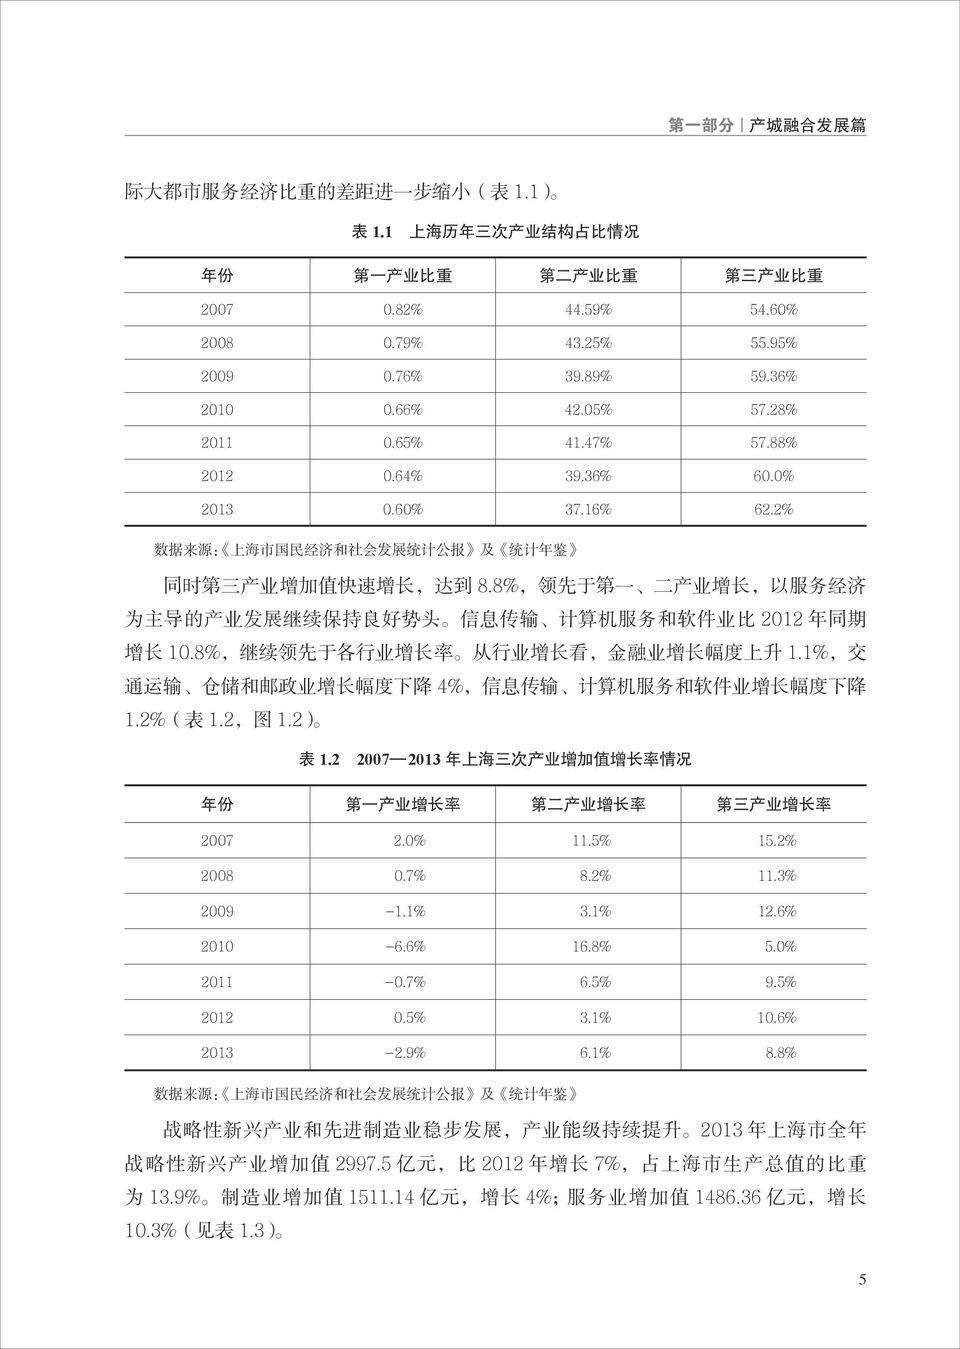 2% 数 据 来 源 : 上 海 市 国 民 经 济 和 社 会 发 展 统 计 公 报 及 统 计 年 鉴 同 时 第 三 产 业 增 加 值 快 速 增 长, 达 到 8.